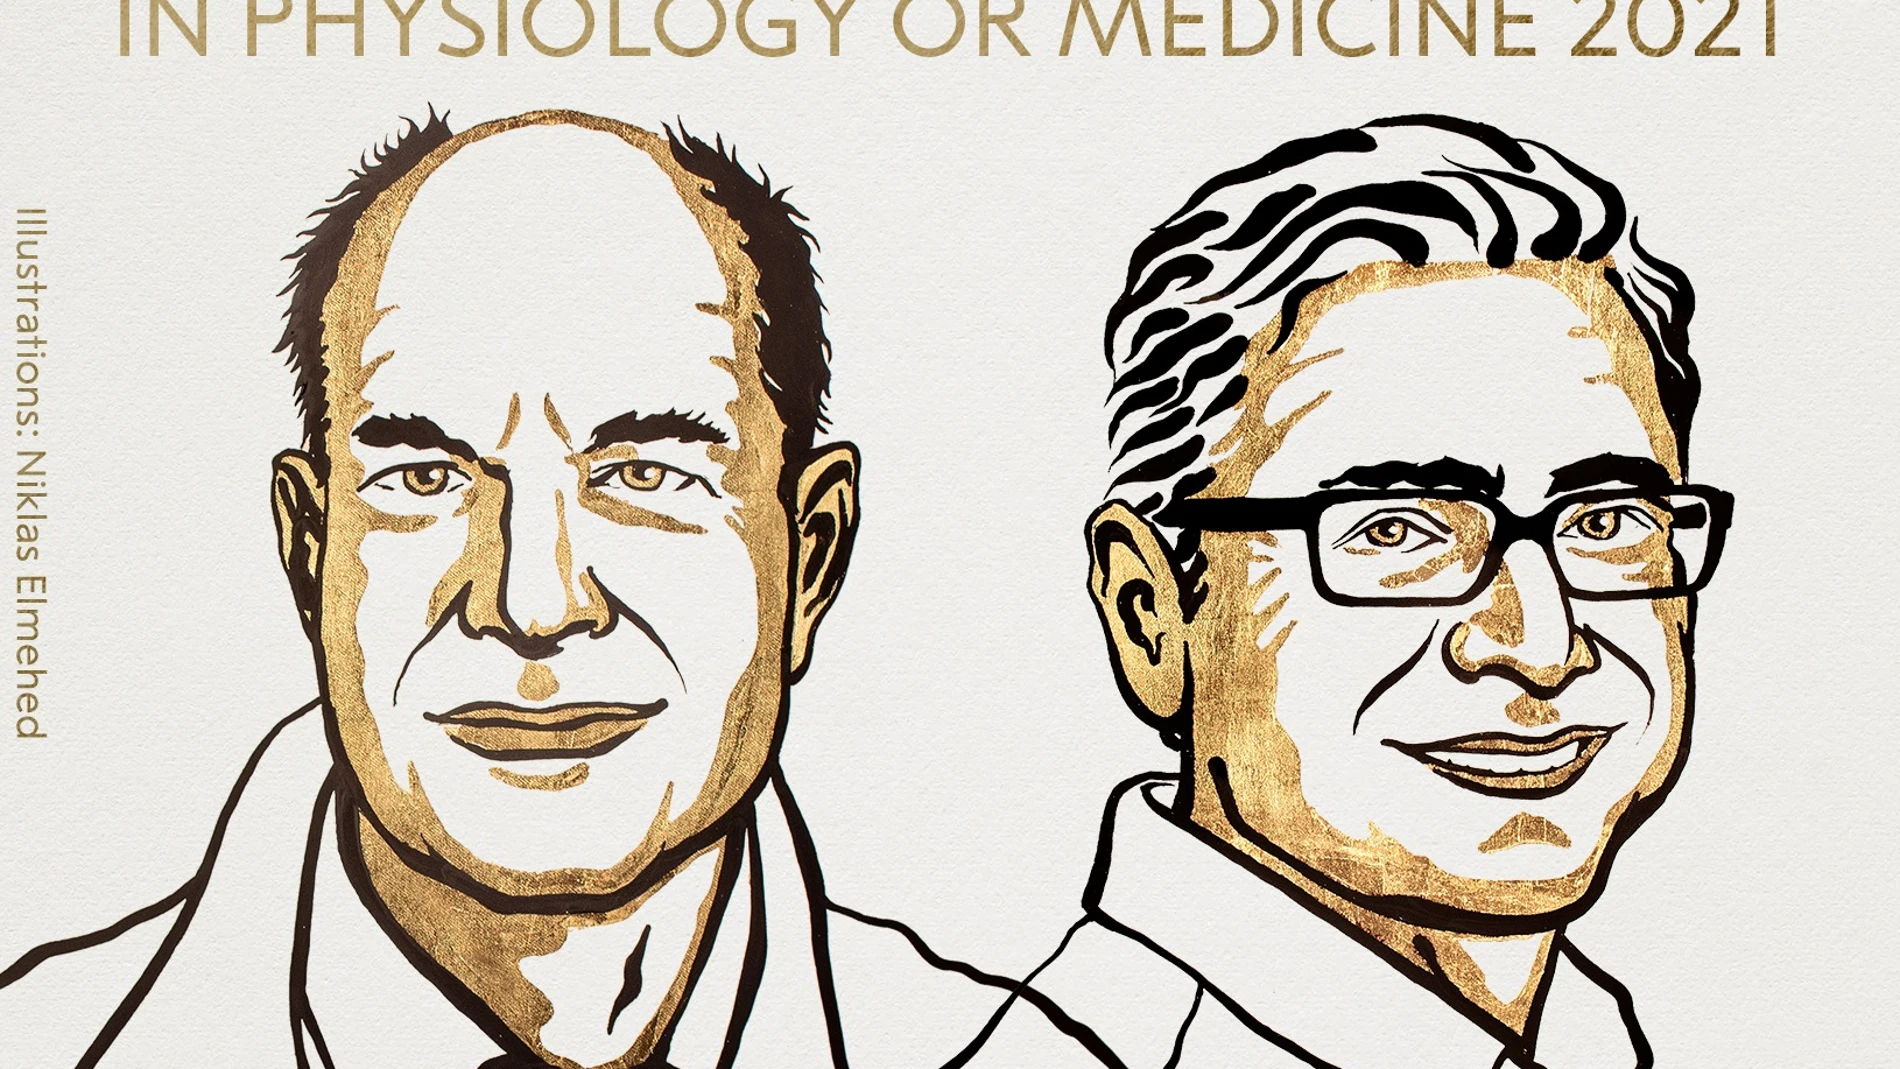 David Julius y Ardem Patapoutian, Premio Nobel de Medicina 2021